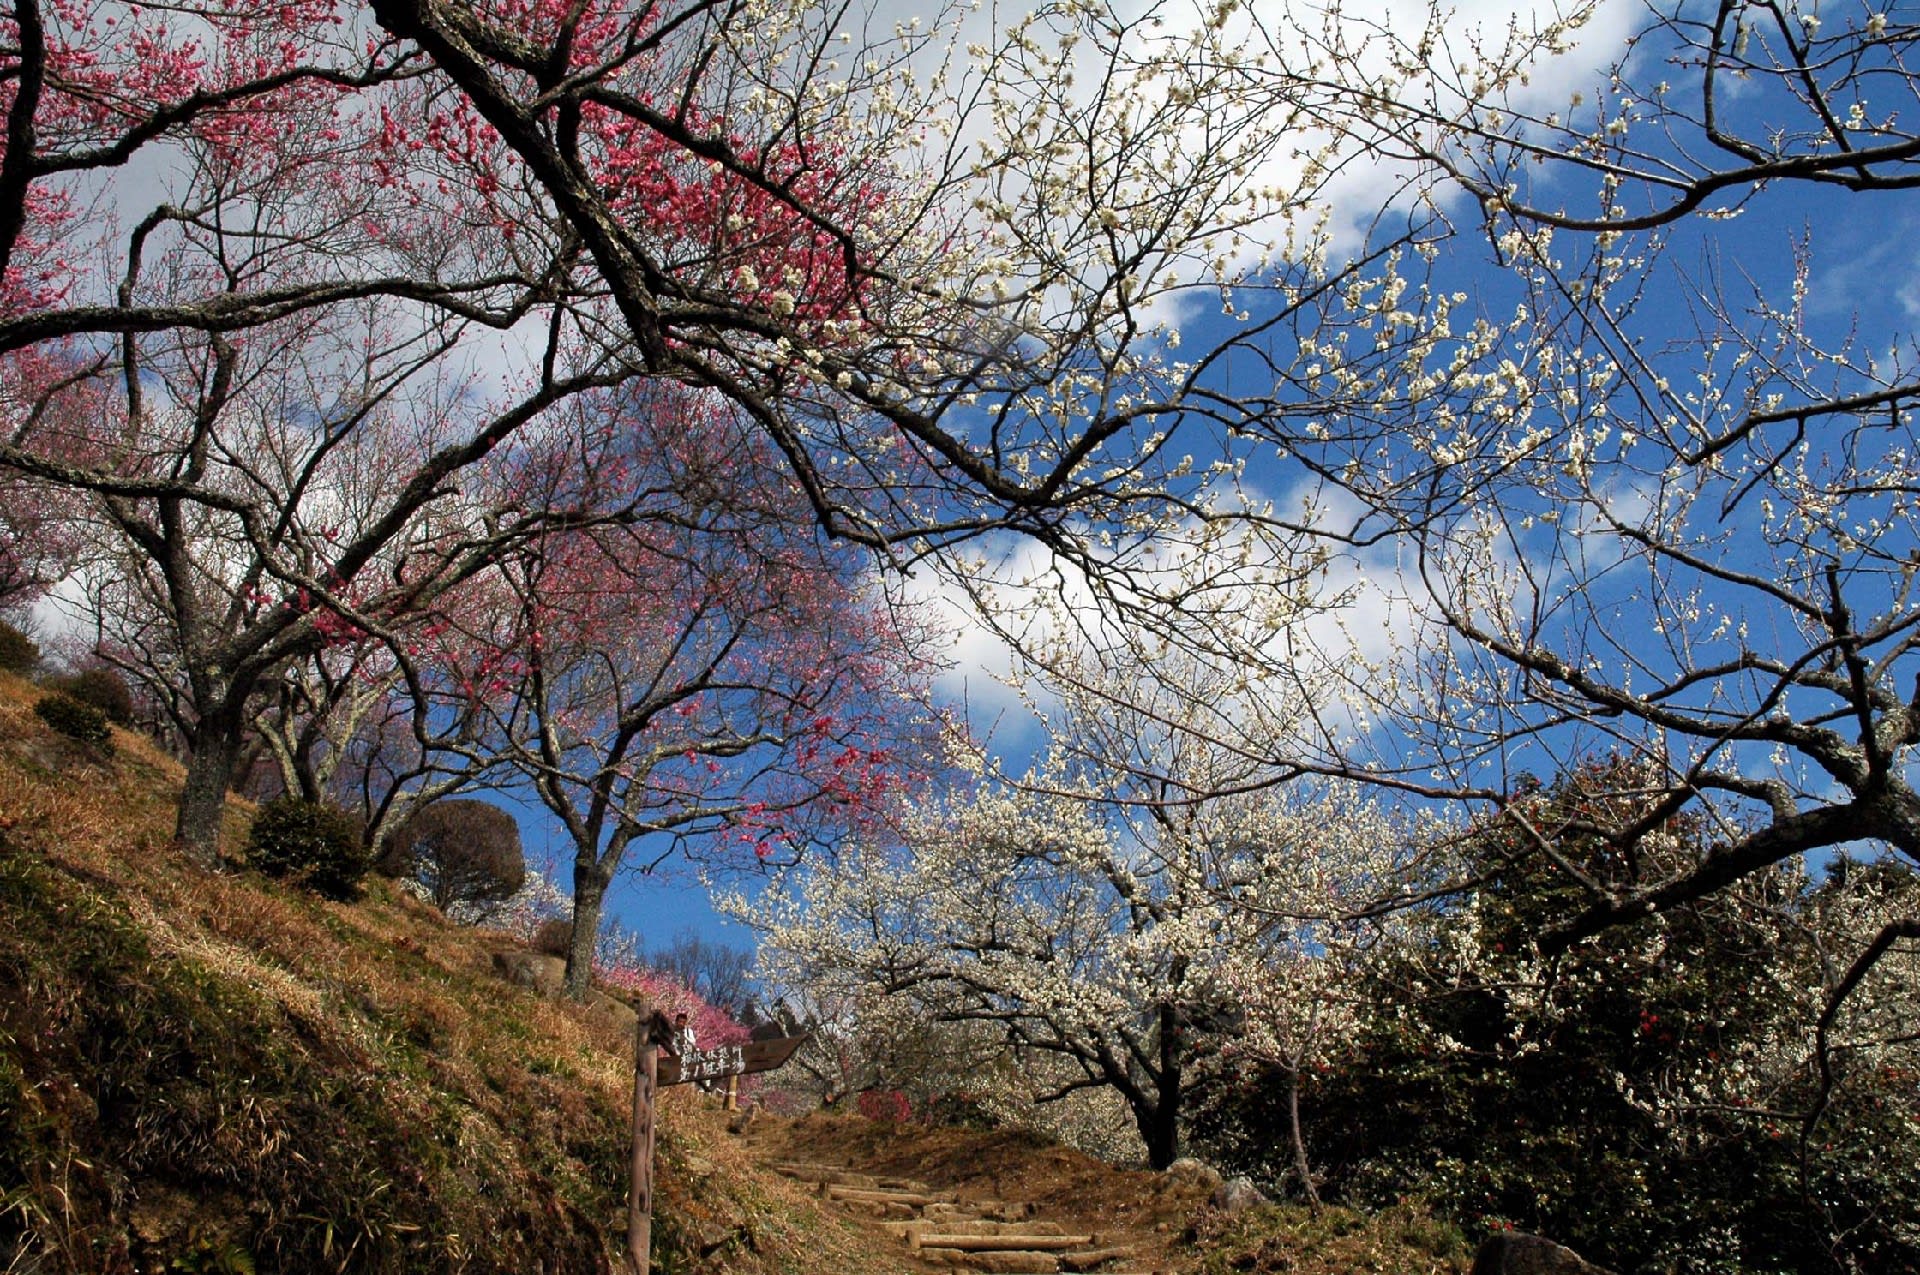 筑波山 梅林の開花状況（3月6日） 紅梅満開、白梅7分咲き ふるさとは誰にもある。そこには先人の足跡、伝承されたものがある。つくばには